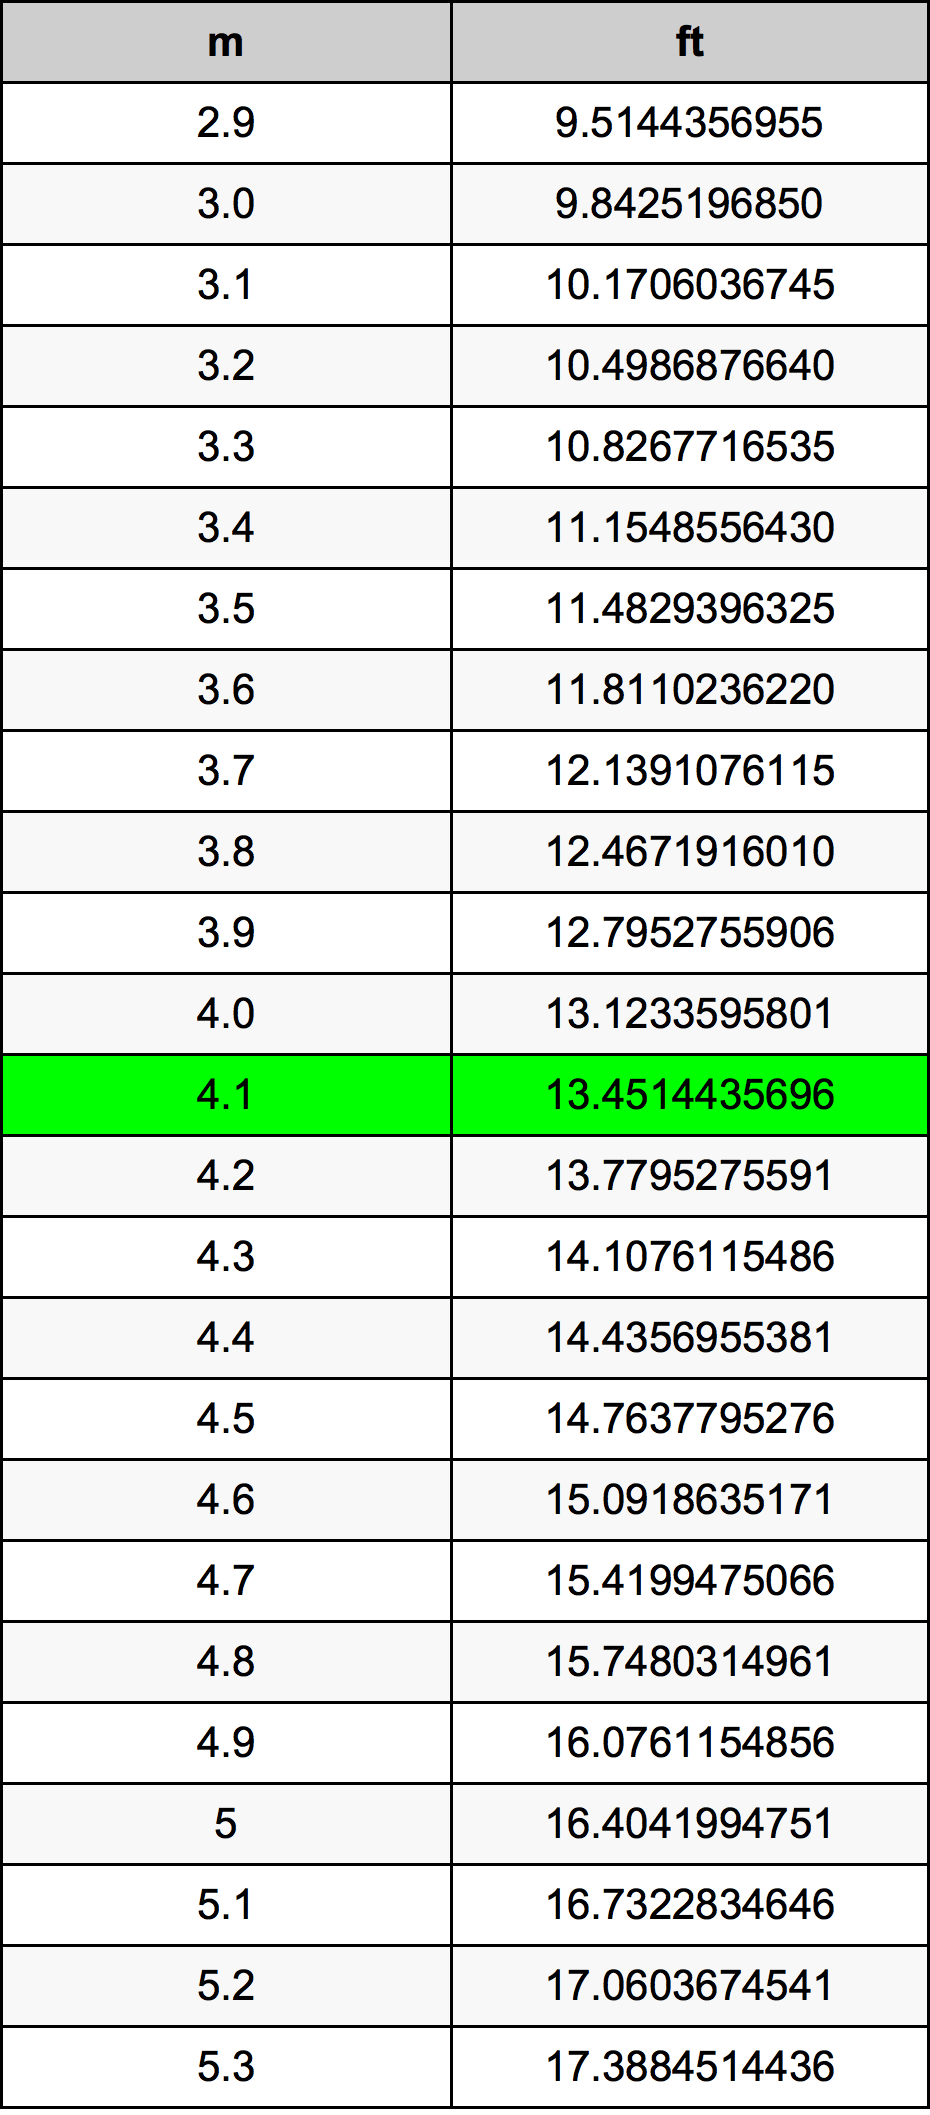 4.1 Metru tabelul de conversie